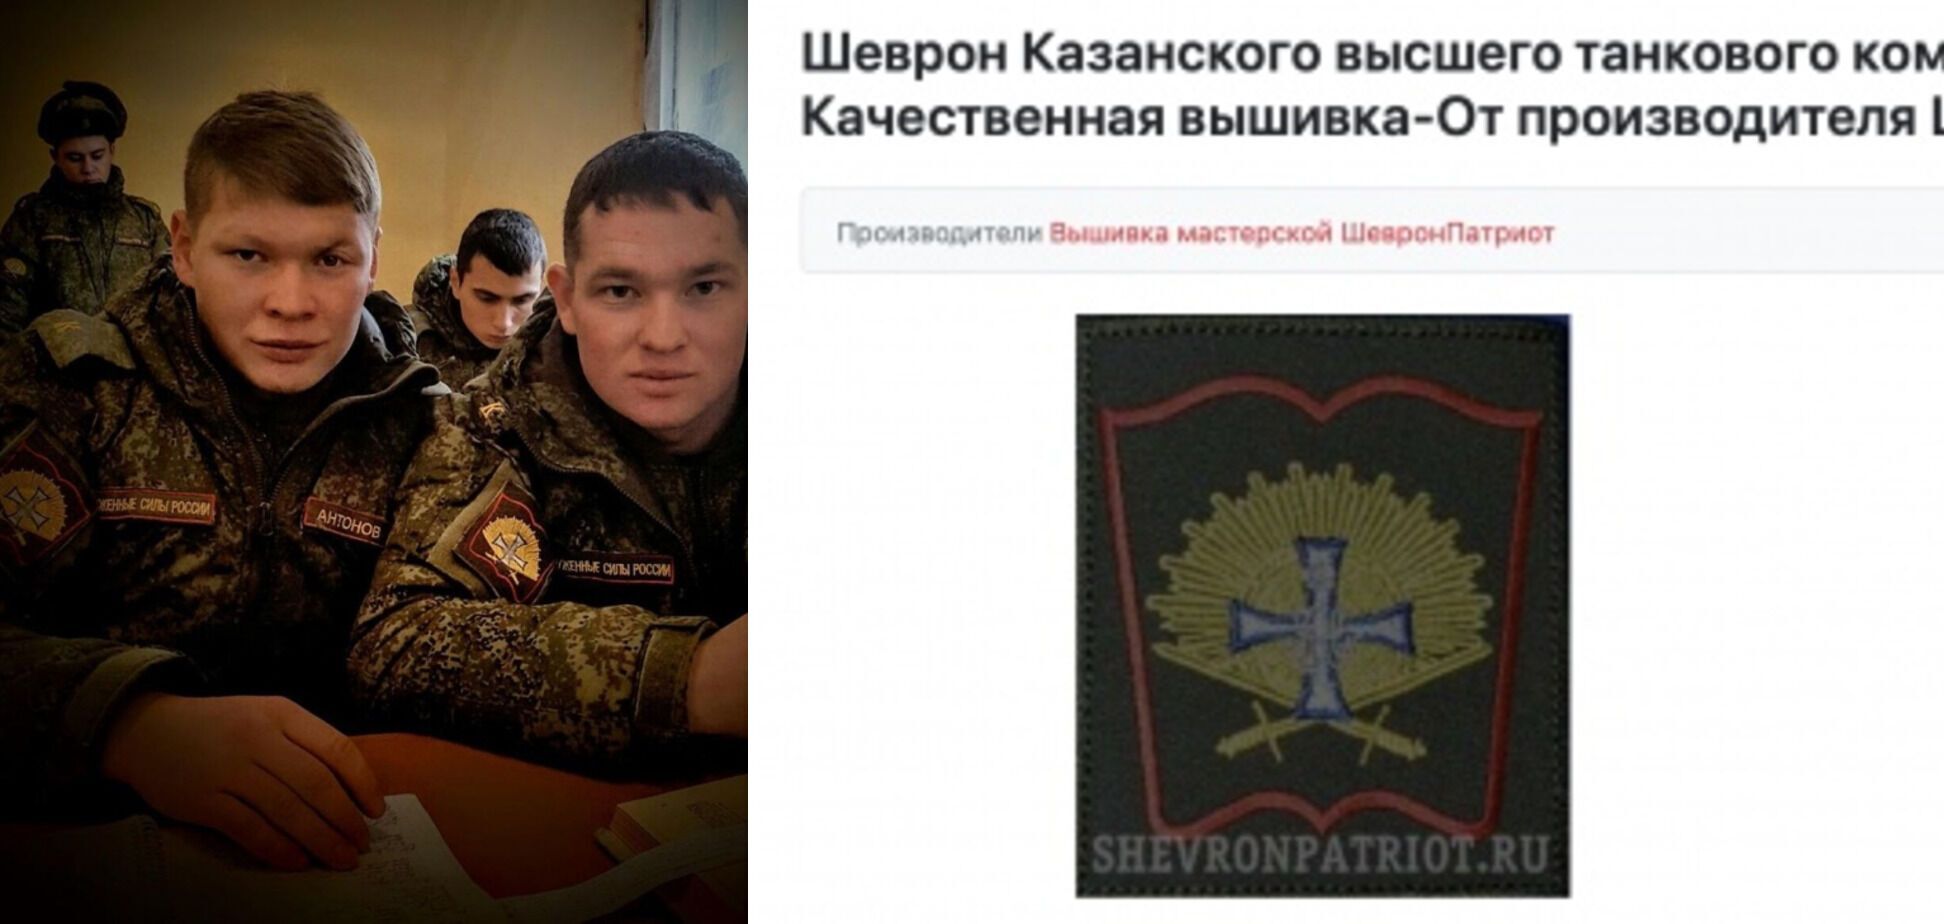 Иванов является выпускником Казанского высшего танкового училища.